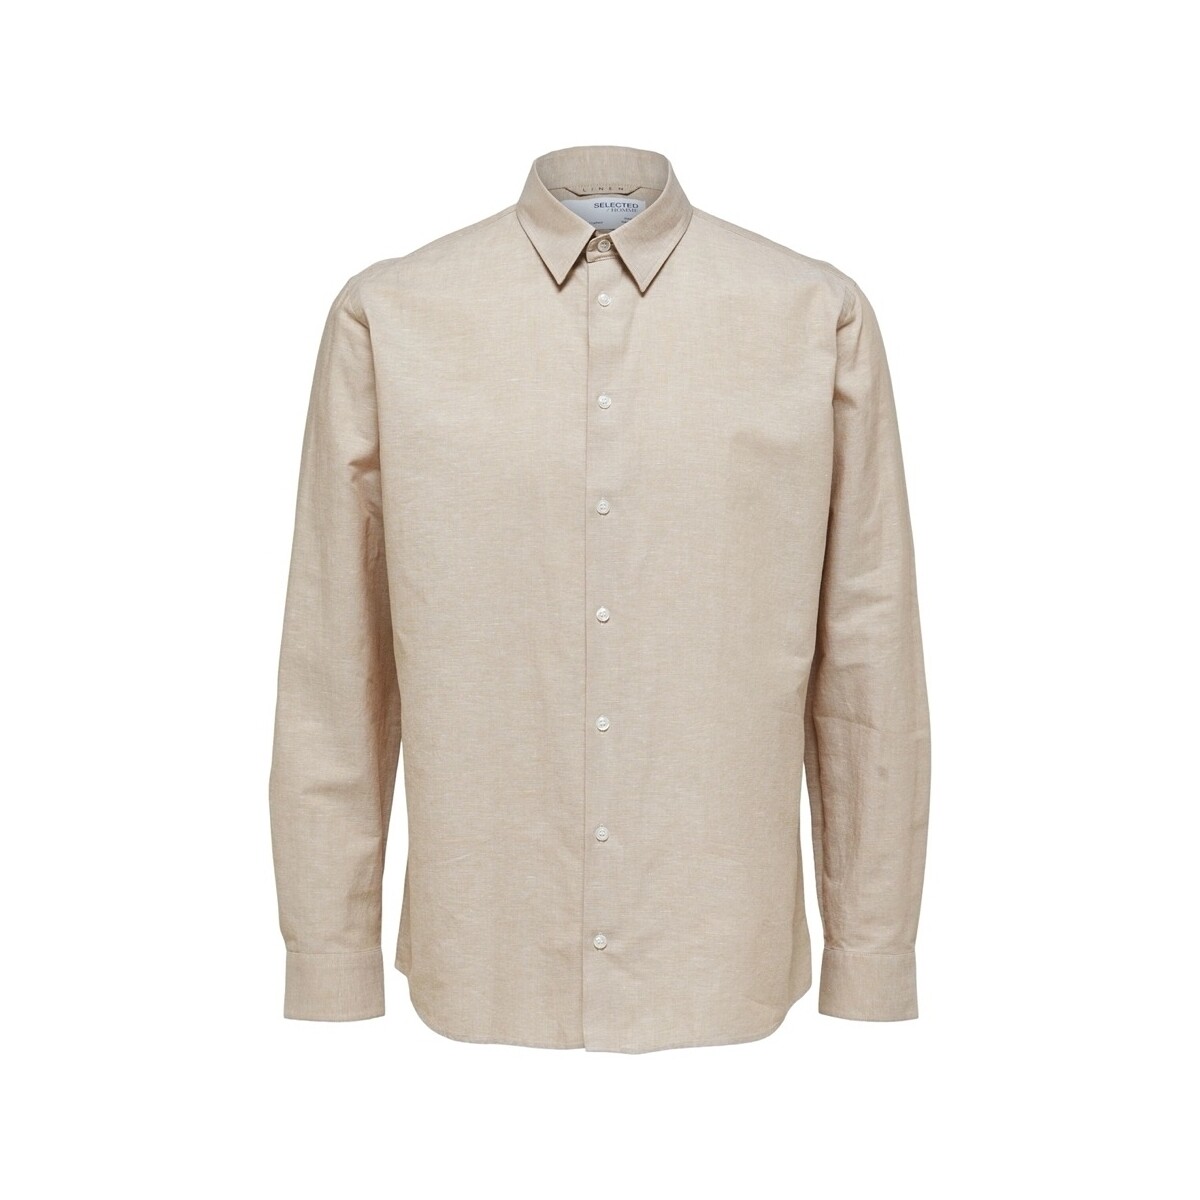 Textil Muži Košile s dlouhymi rukávy Selected Regnew-Linen - Kelp Béžová